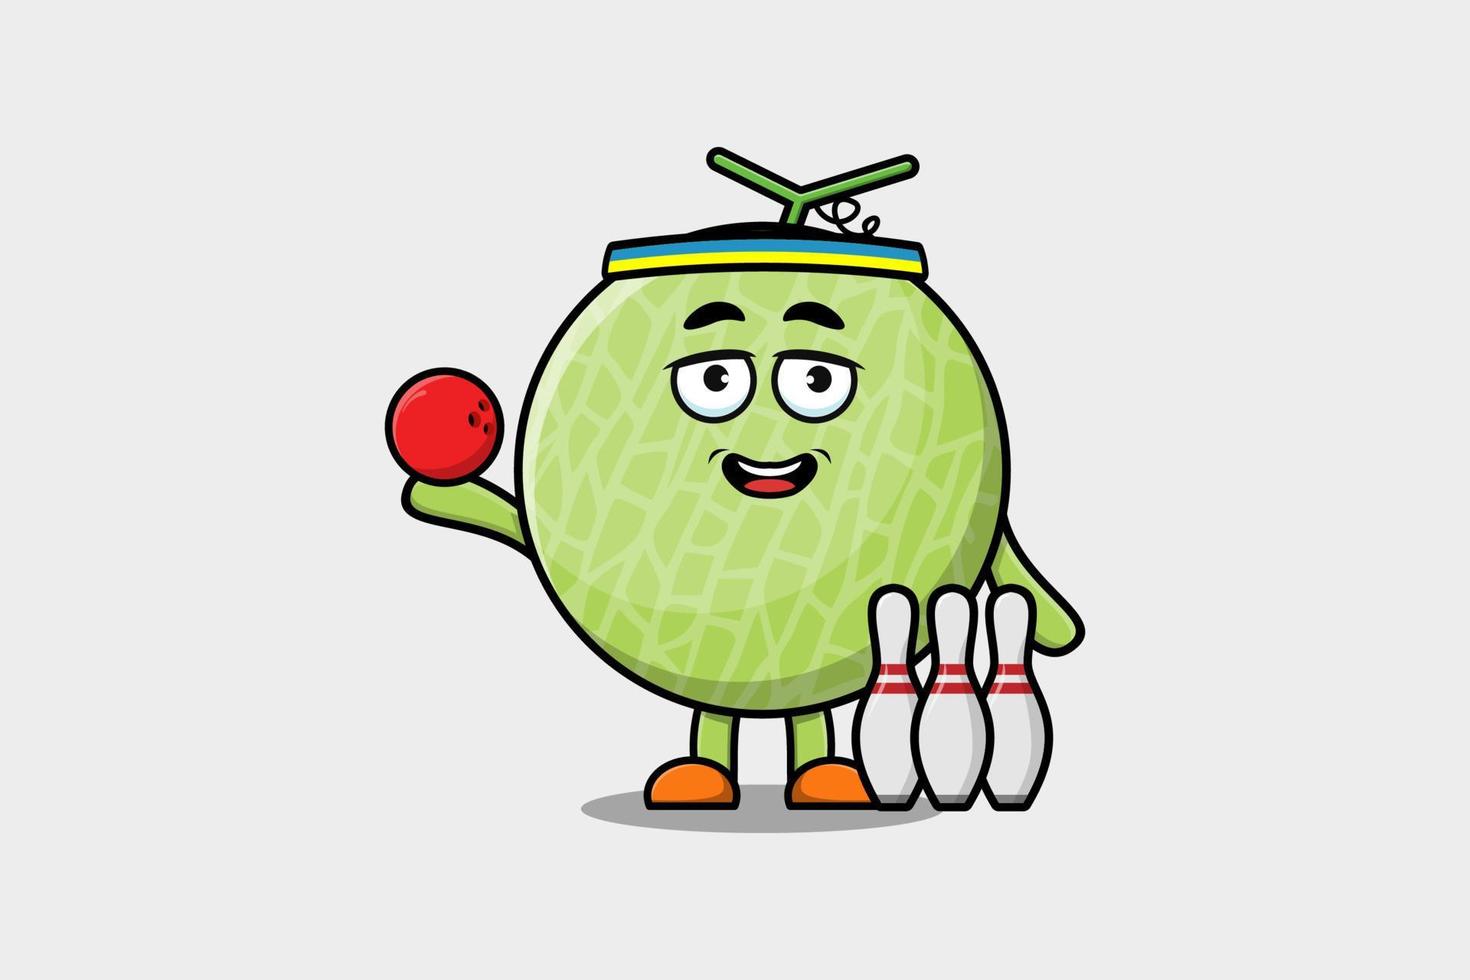 carino cartone animato melone personaggio giocando bowling vettore